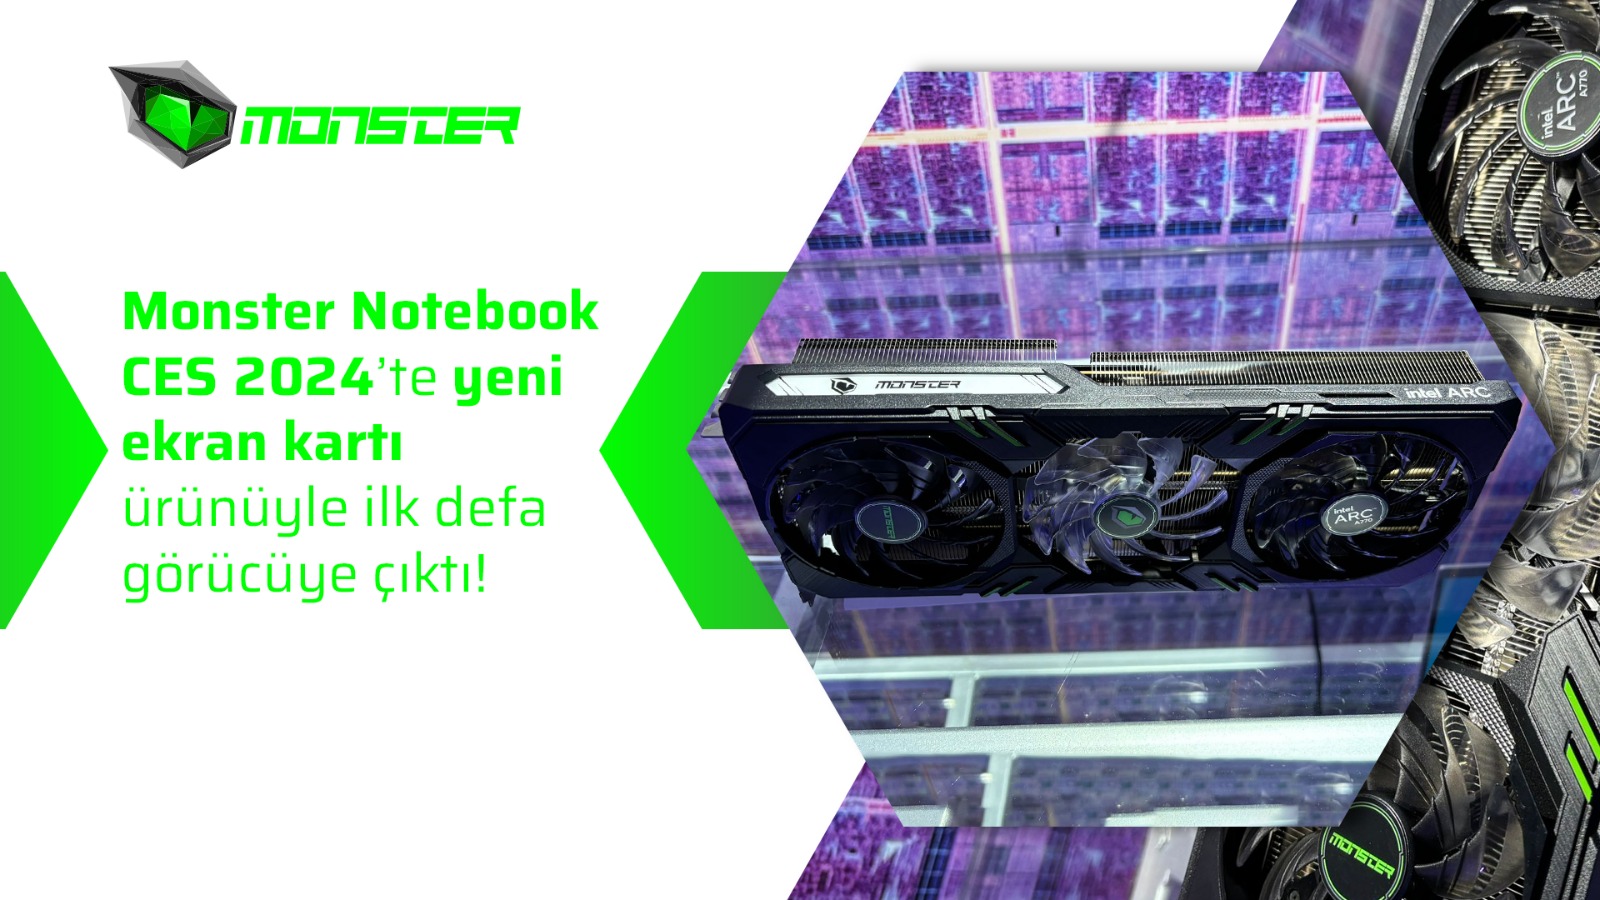 Monster Notebook Yeni Ekran Kartı İle İlk Defa Görücüye Çıktı!